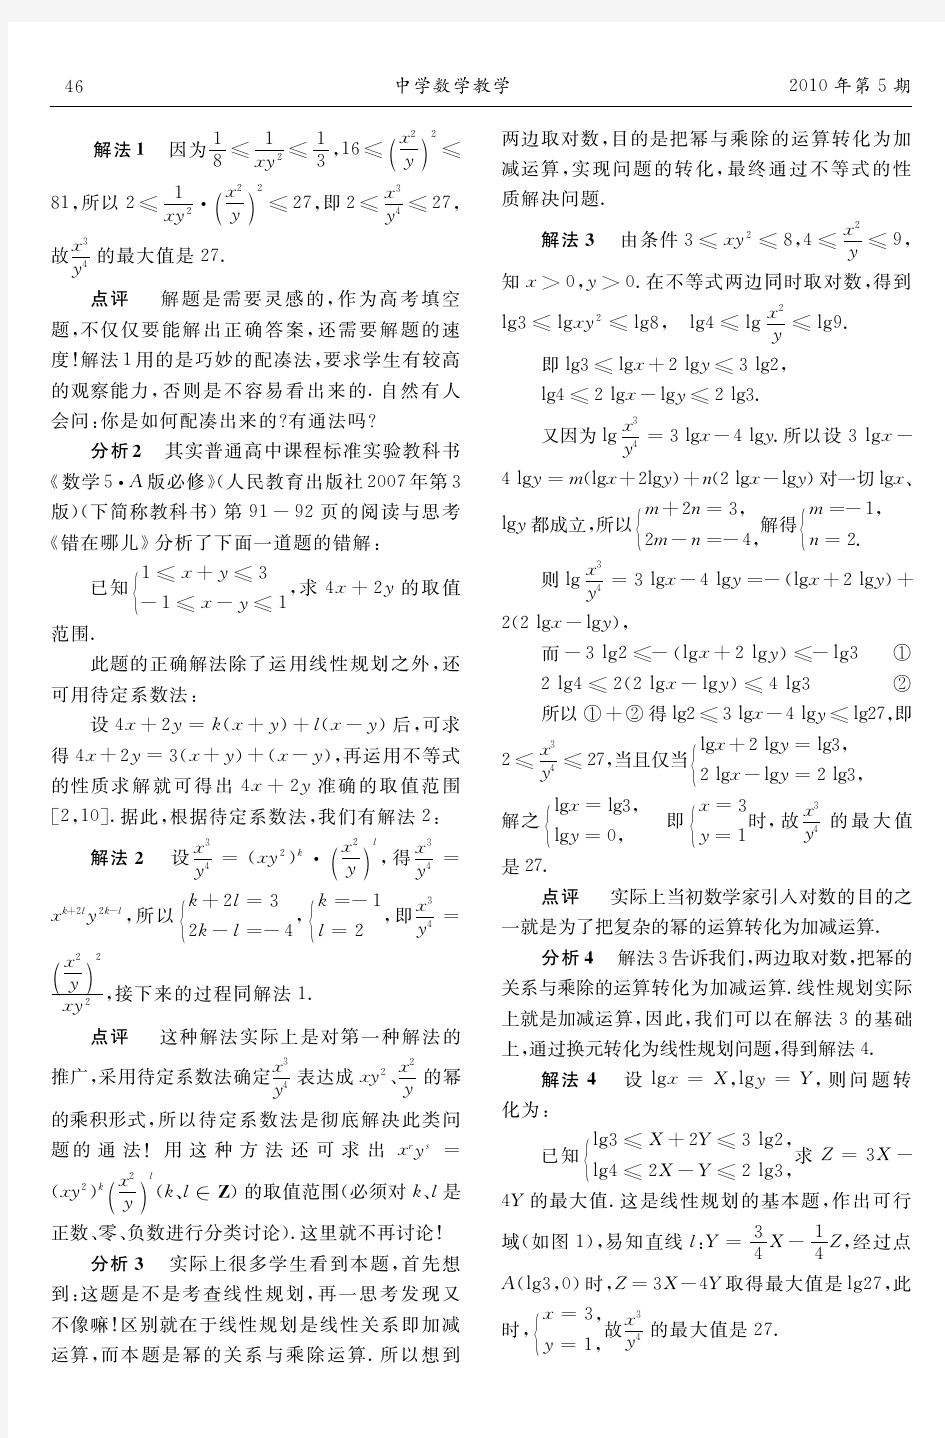 点击2010年江苏高考数学卷第12题